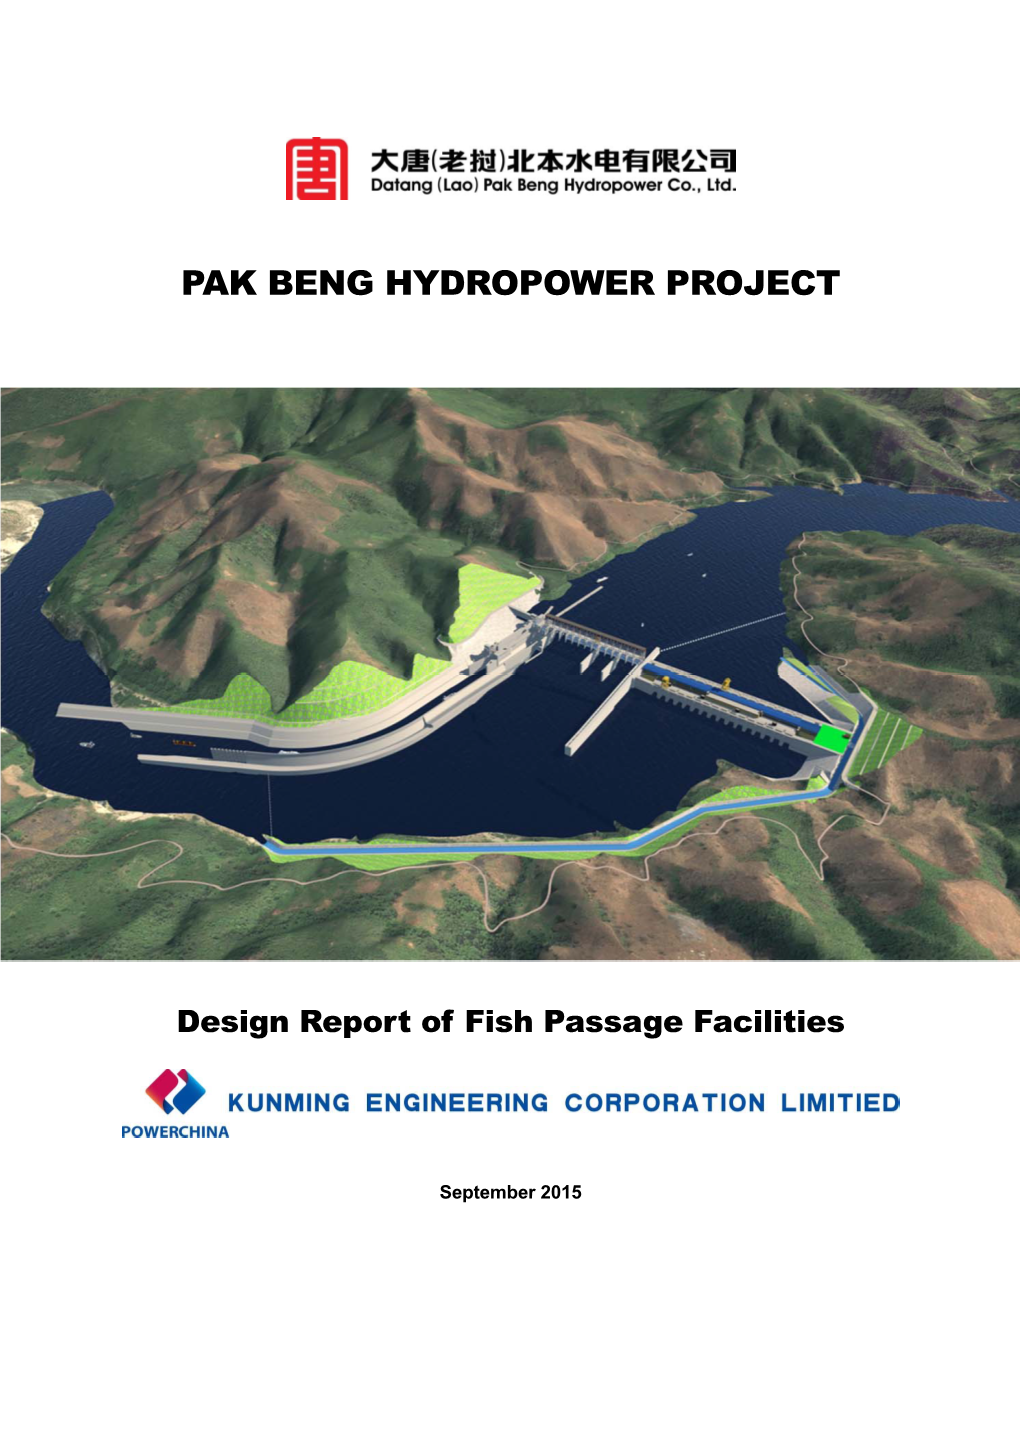 Pak Beng Hydropower Project